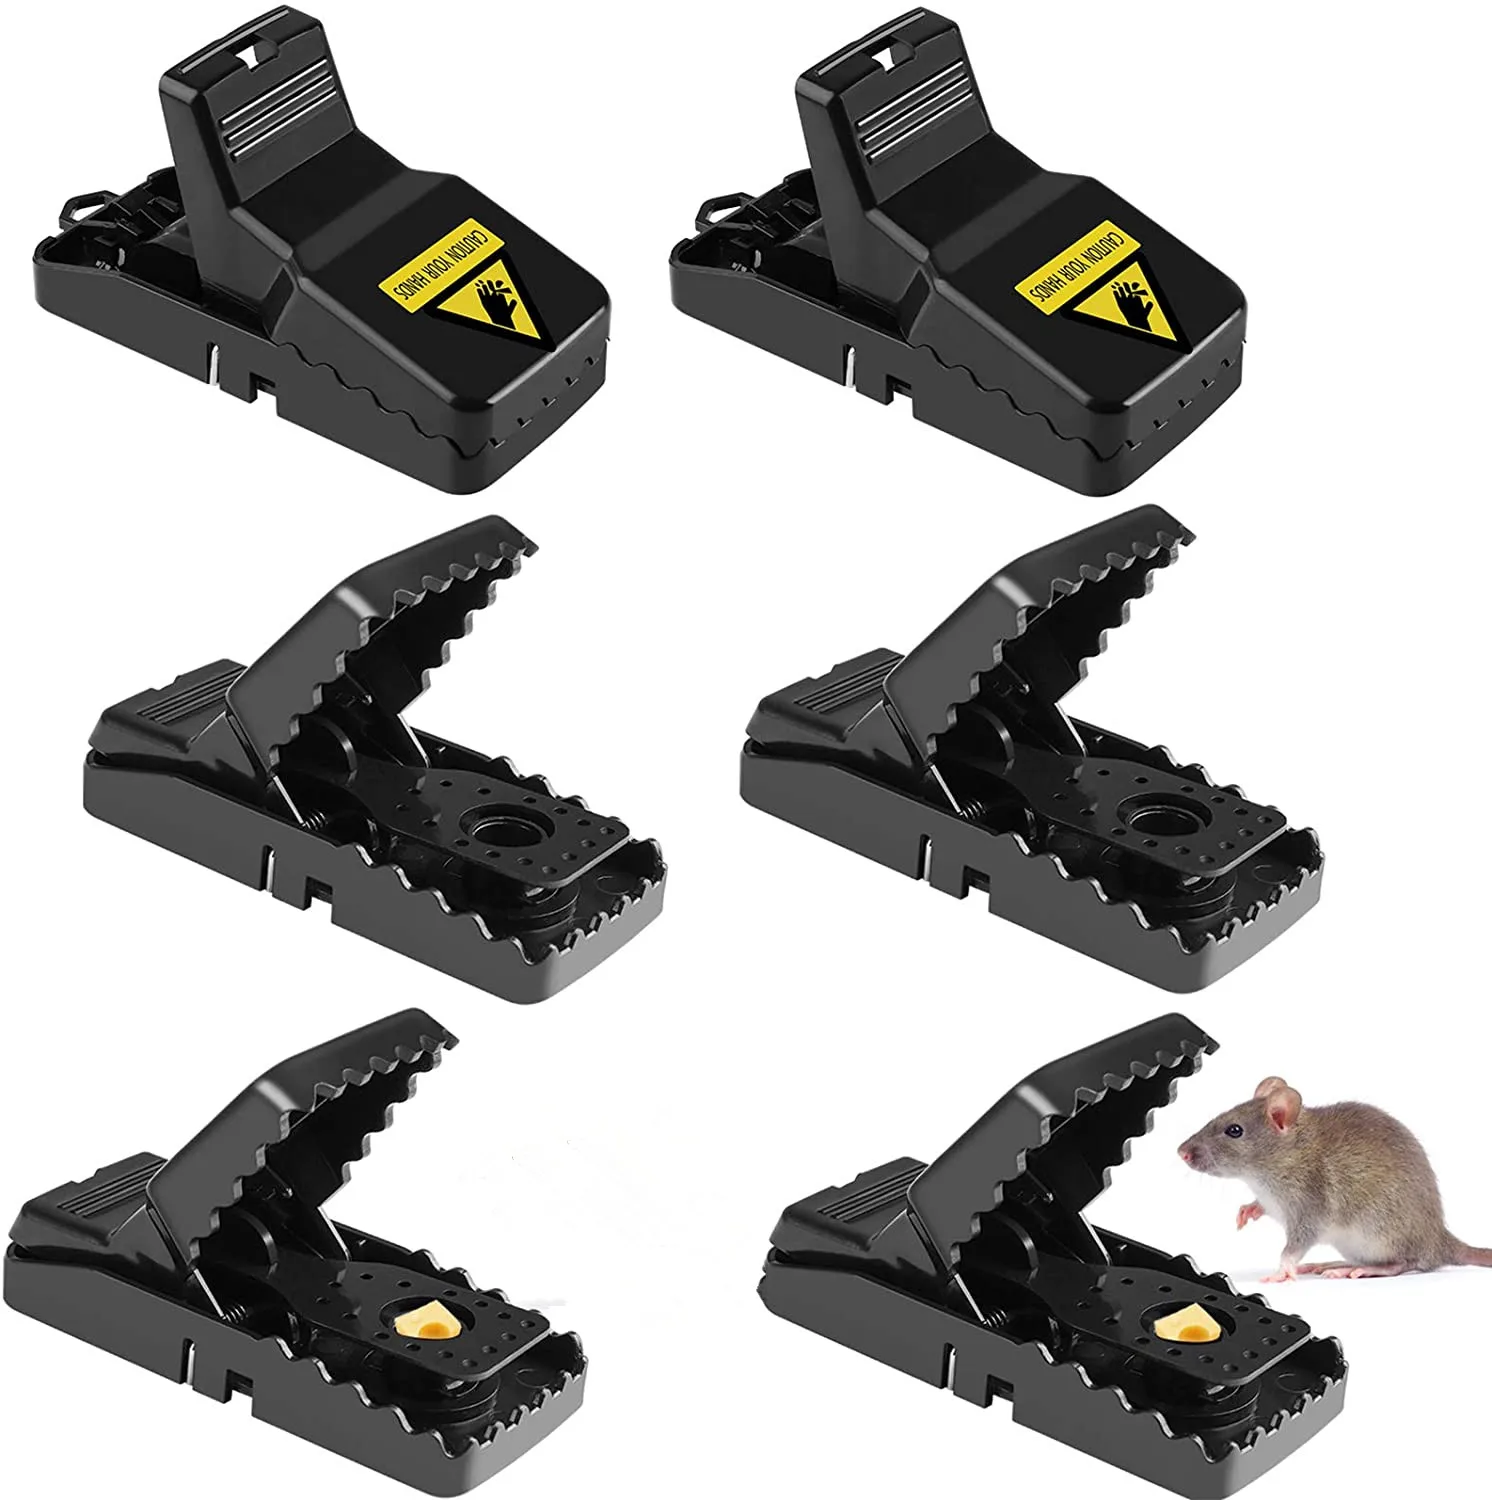 6PCS Reusable MOUSE TRAPS Rat Trap Rodent Snap Trap Mice Trap